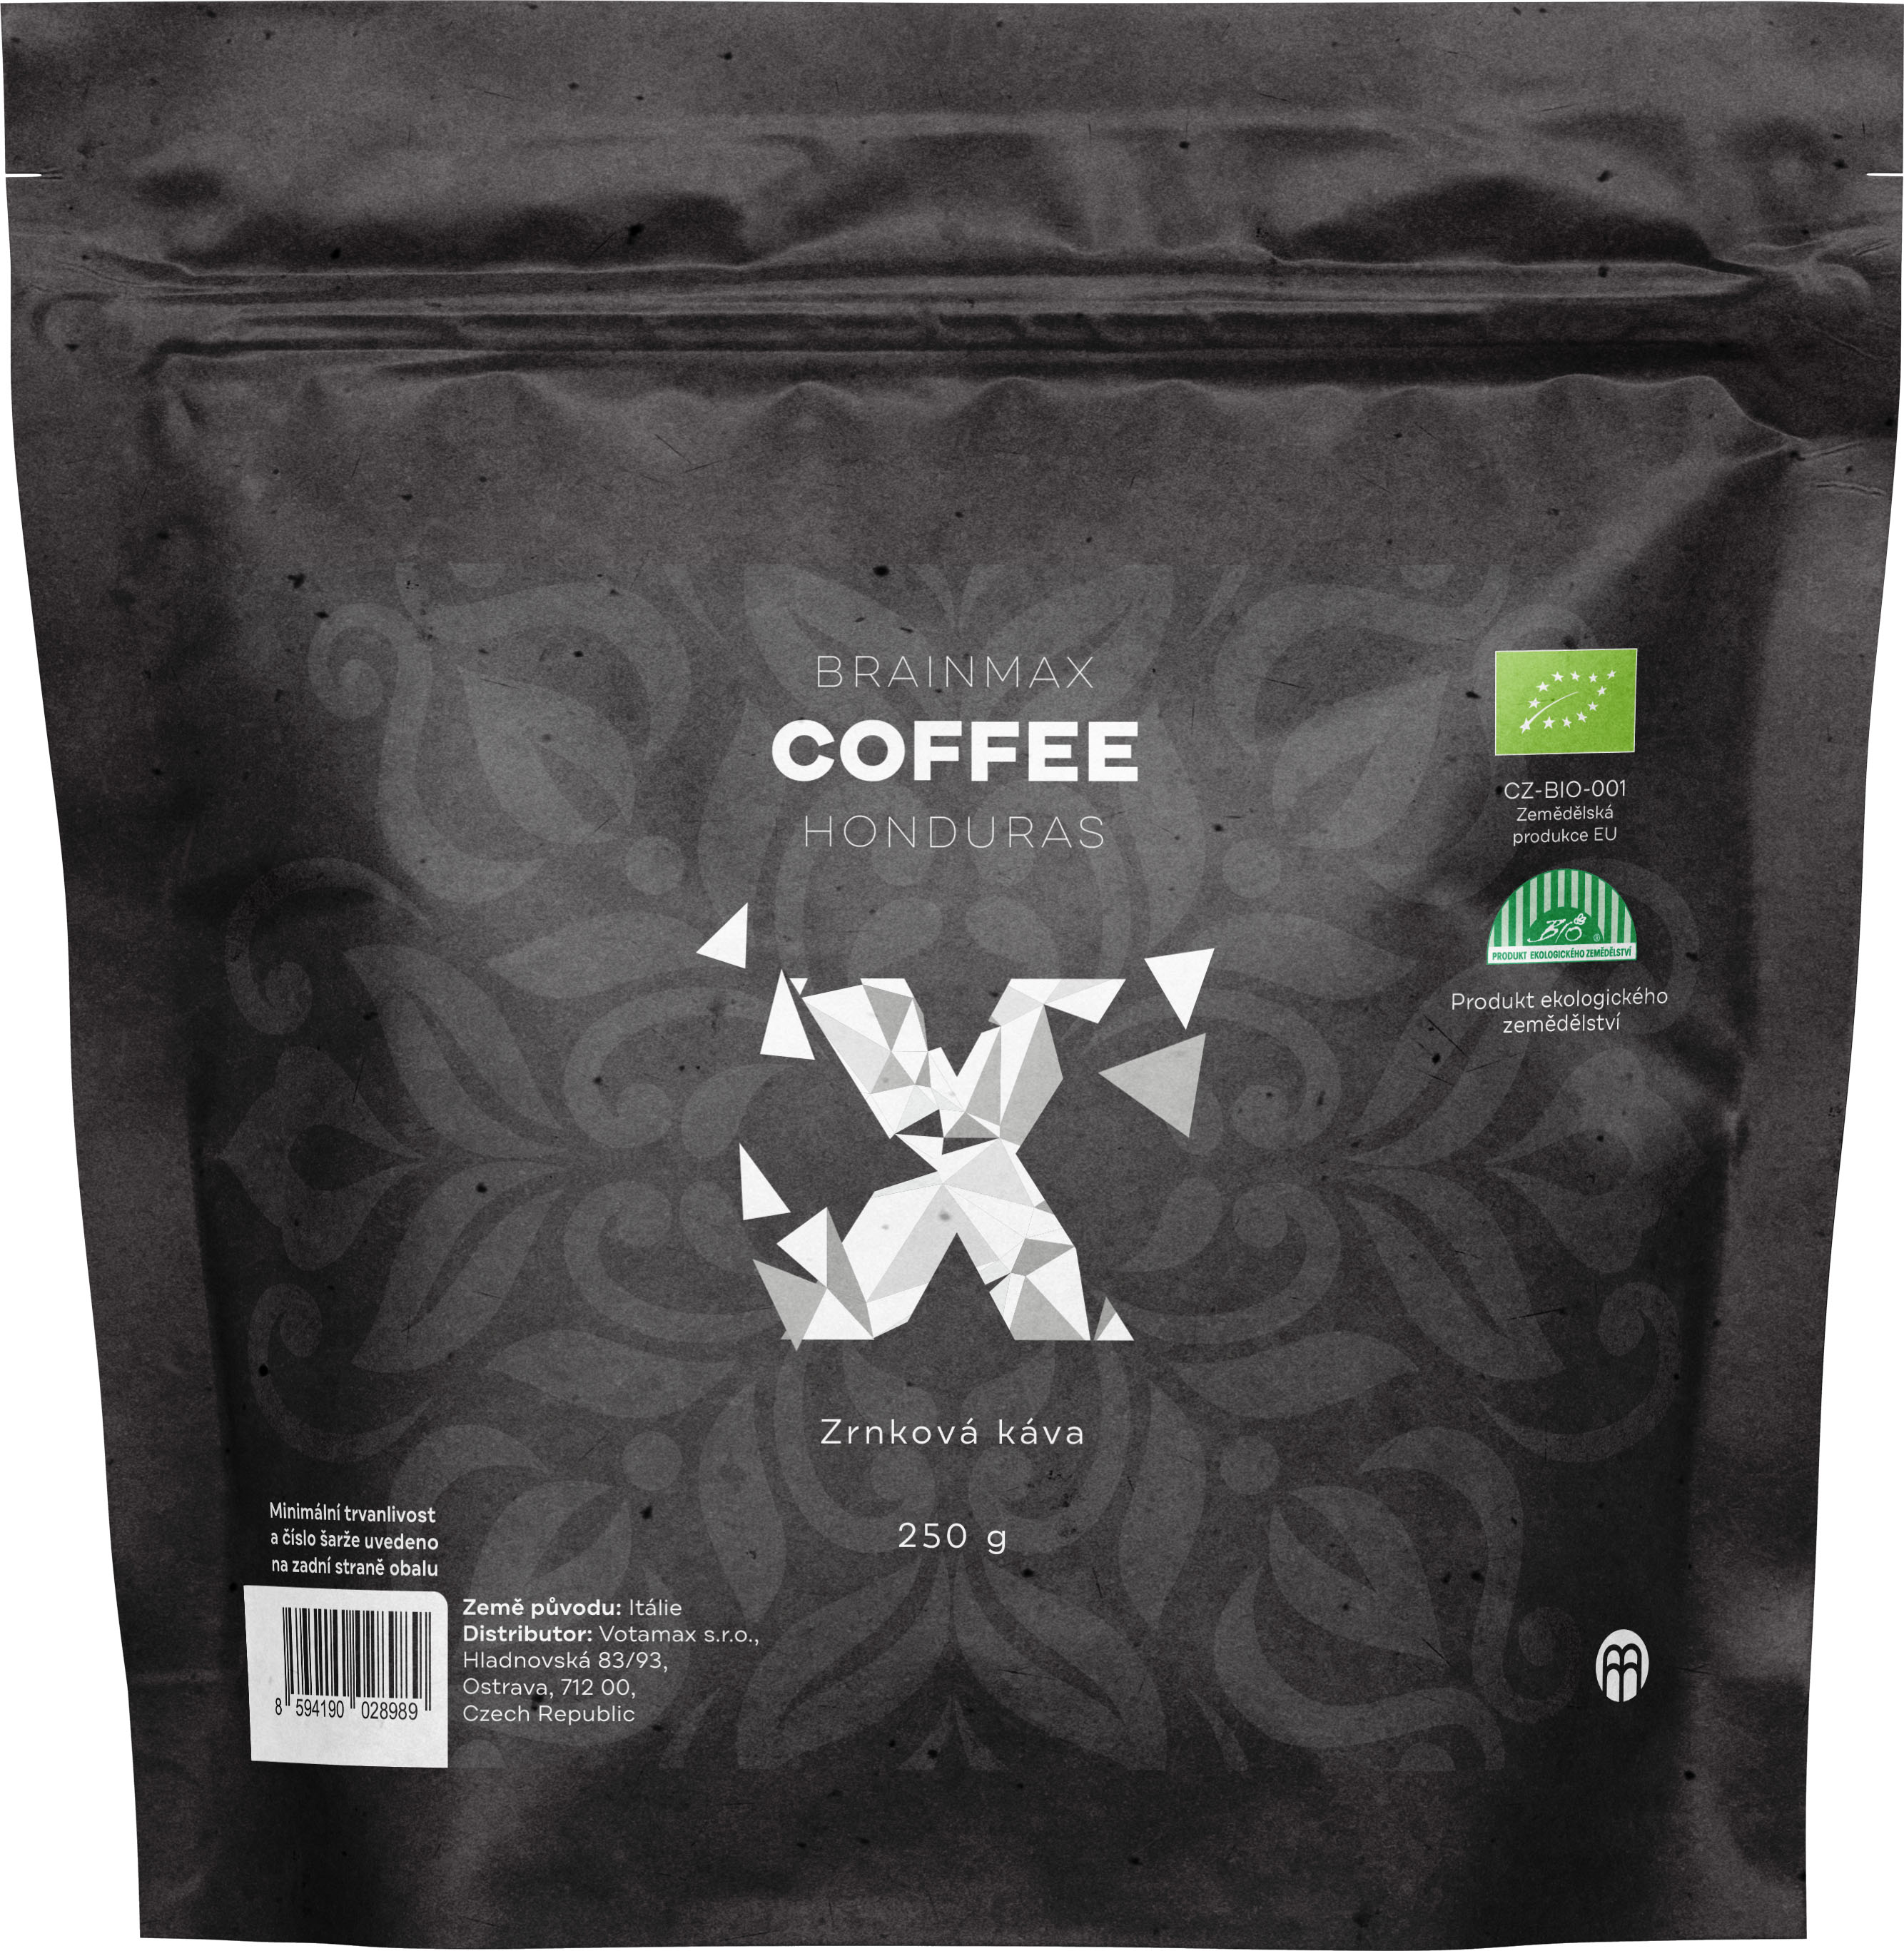 Levně BrainMax Coffee Honduras, zrnková káva, BIO, 250 g *CZ-BIO-001 certifikát